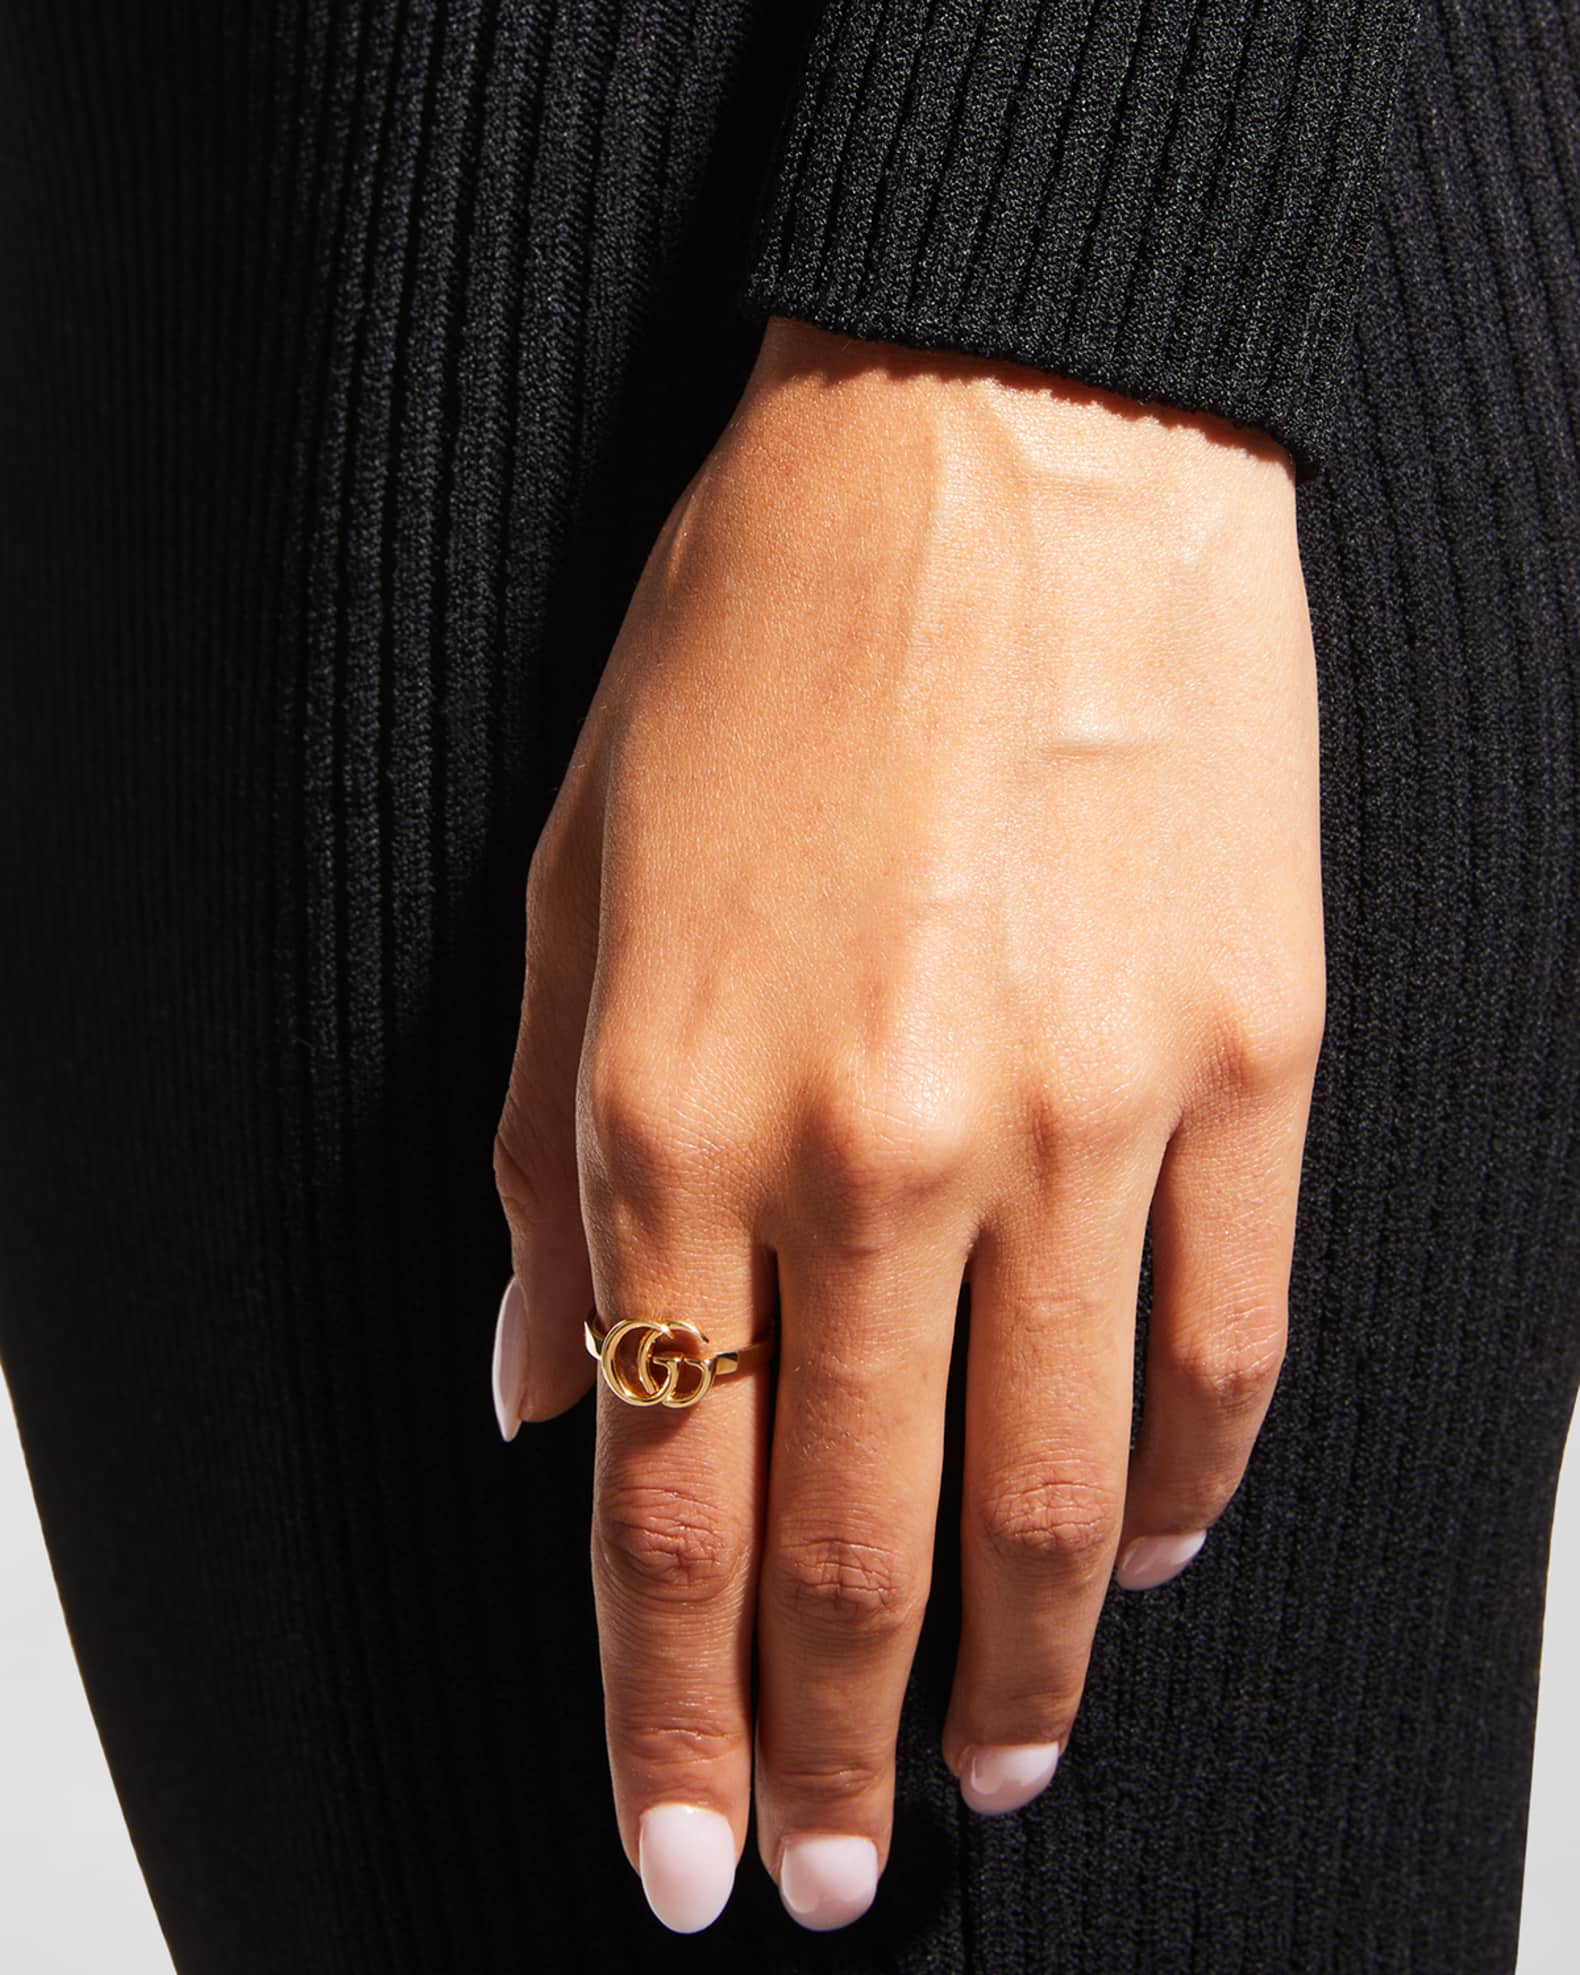 Yasuko Azuma 18K Gold Ring with Four Prong-Set Colorless Diamonds – Peridot  Fine Jewelry